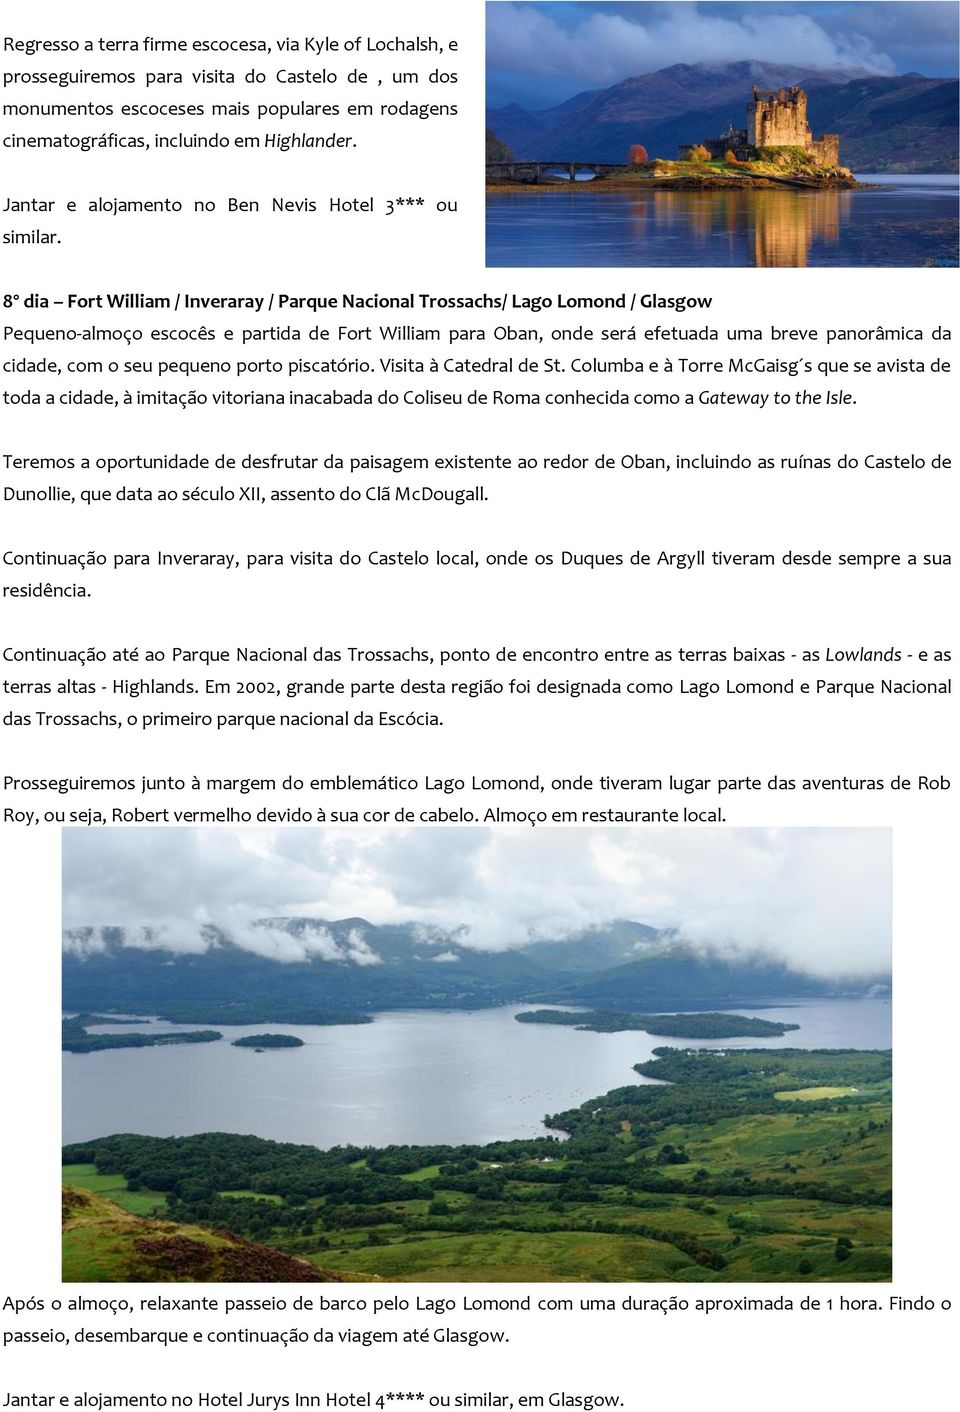 8º dia Fort William / Inveraray / Parque Nacional Trossachs/ Lago Lomond / Glasgow Pequeno-almoço escocês e partida de Fort William para Oban, onde será efetuada uma breve panorâmica da cidade, com o